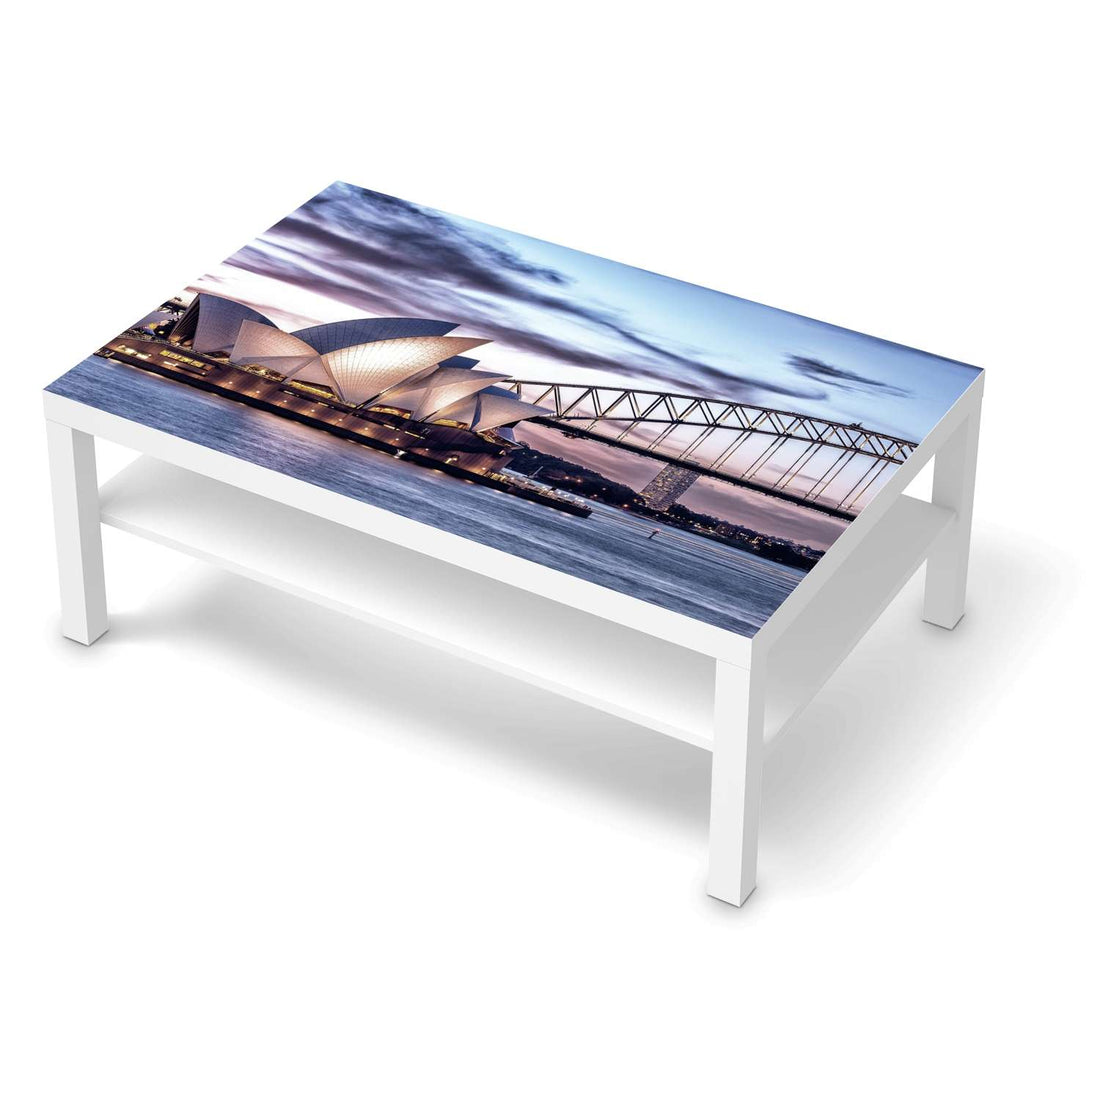 Klebefolie Sydney - IKEA Lack Tisch 118x78 cm - weiss